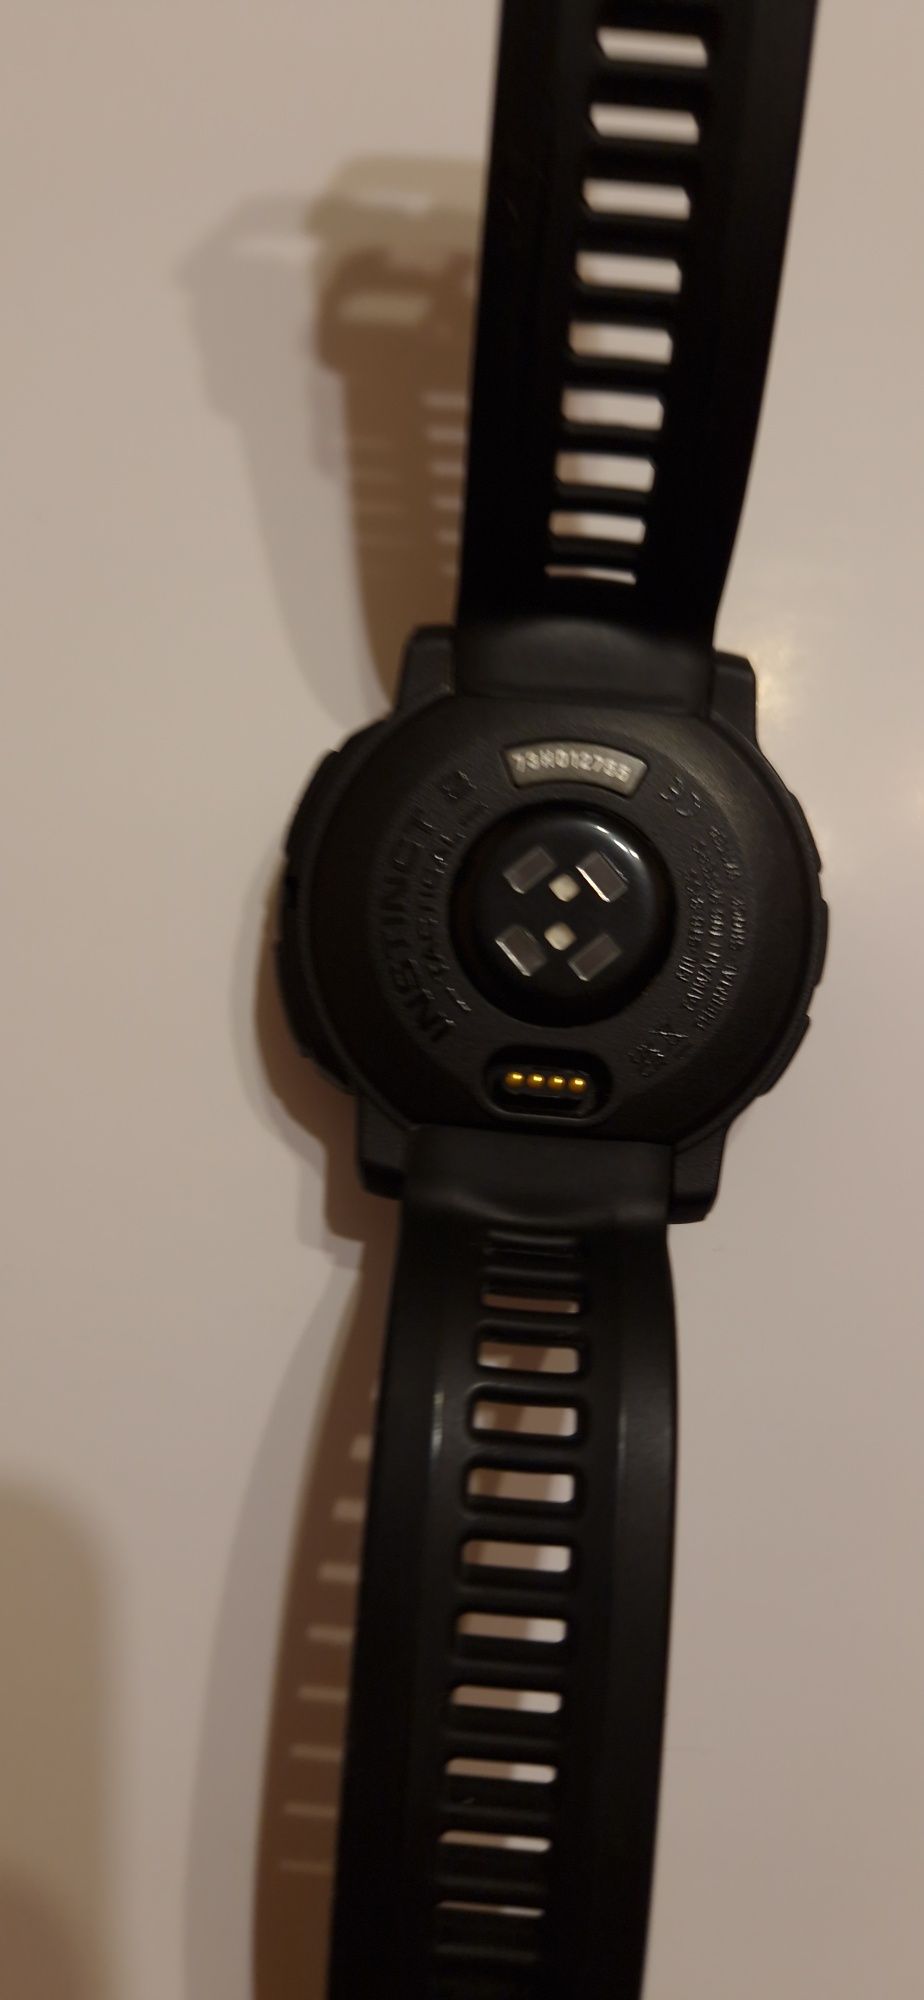 Смарт-часы Instinct 2 Solar Tactical Edition Black GPS